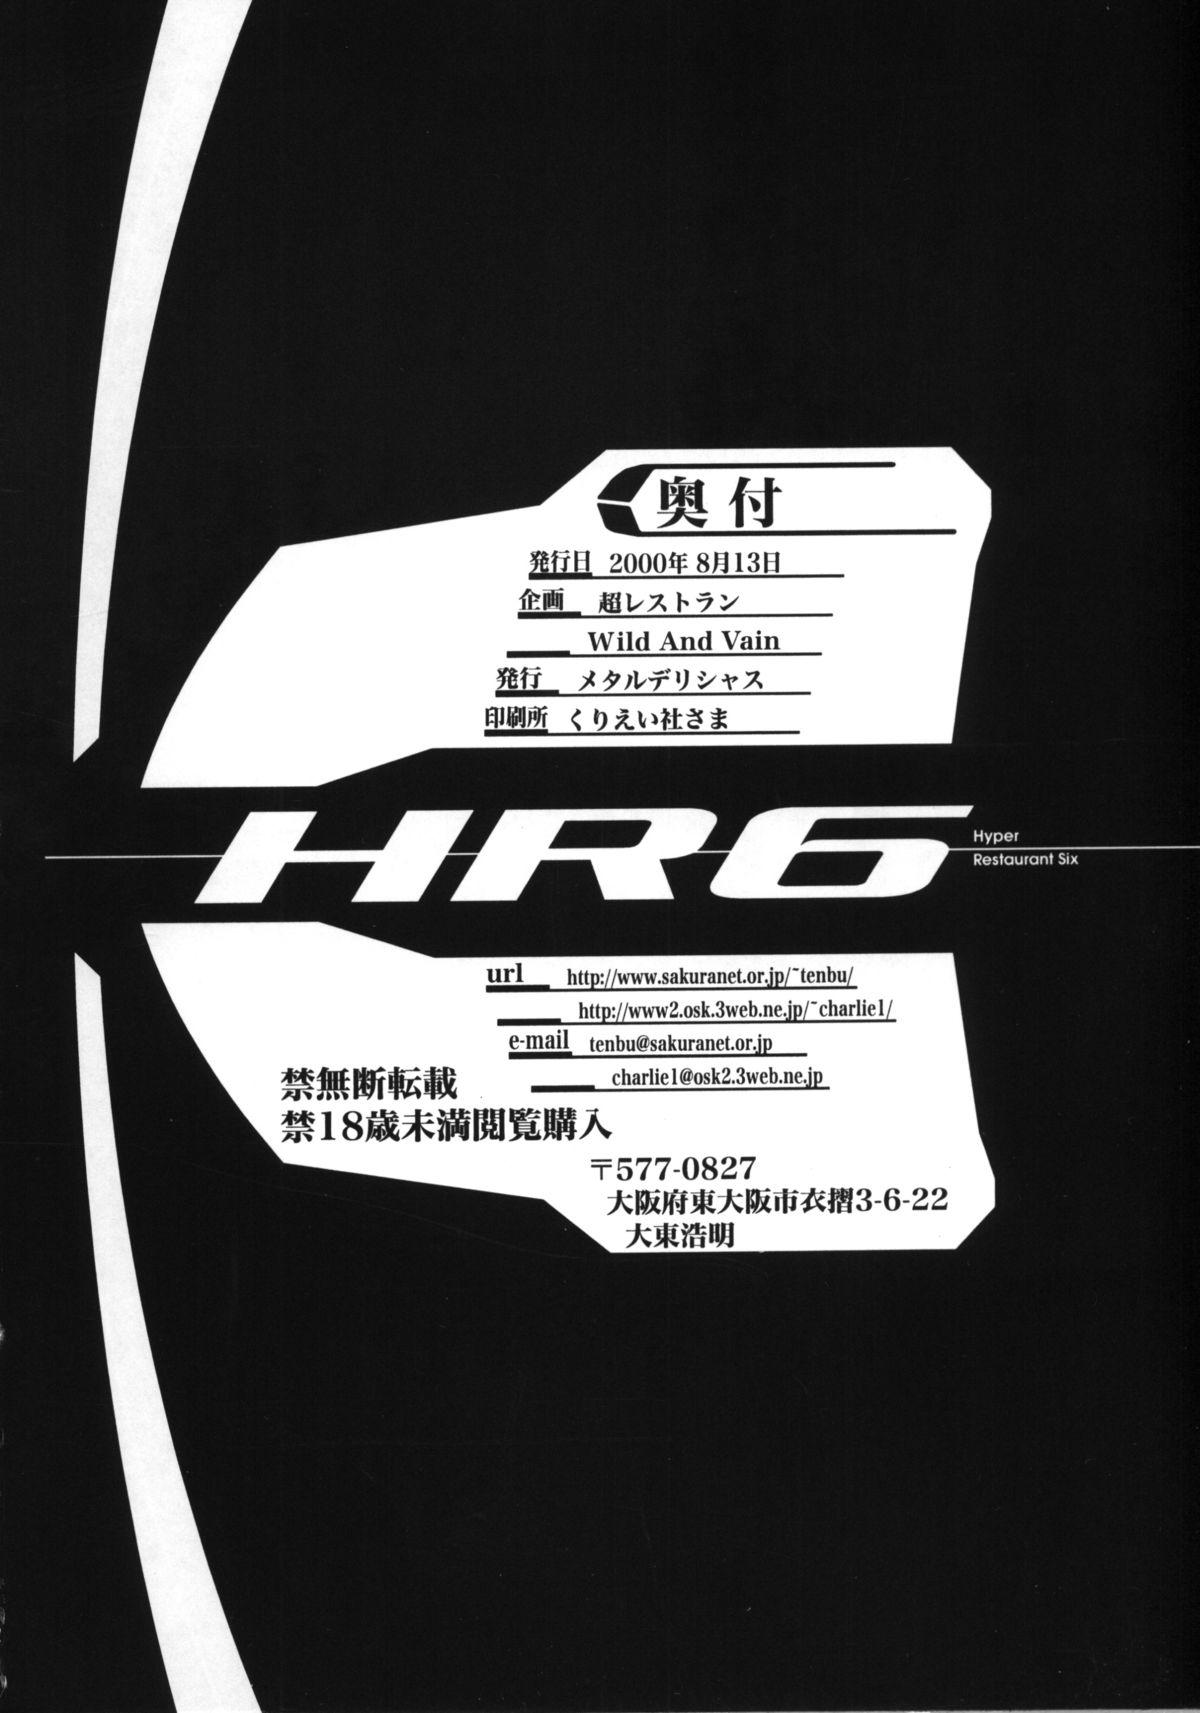 HR6 | Hyper Restaurant 6 40